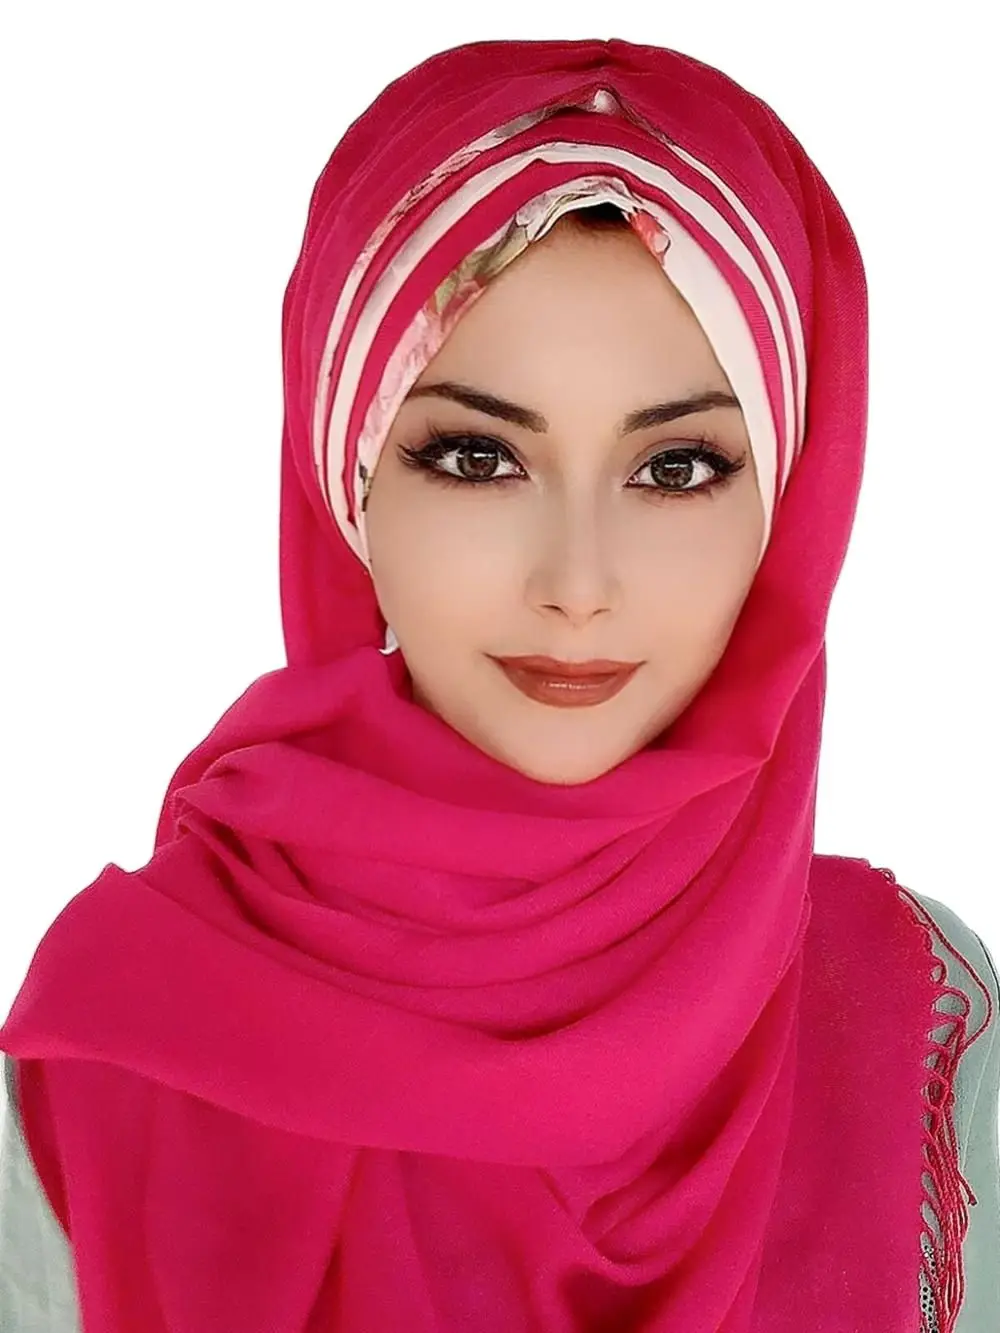 

Yeni Moda Hijab Kadın 2021 Müslüman Başörtüsü İslami Tesettür Türban Şapka Fular Eşarp Pembe Renk Beyaz Şifon Detaylı Hazır Şal